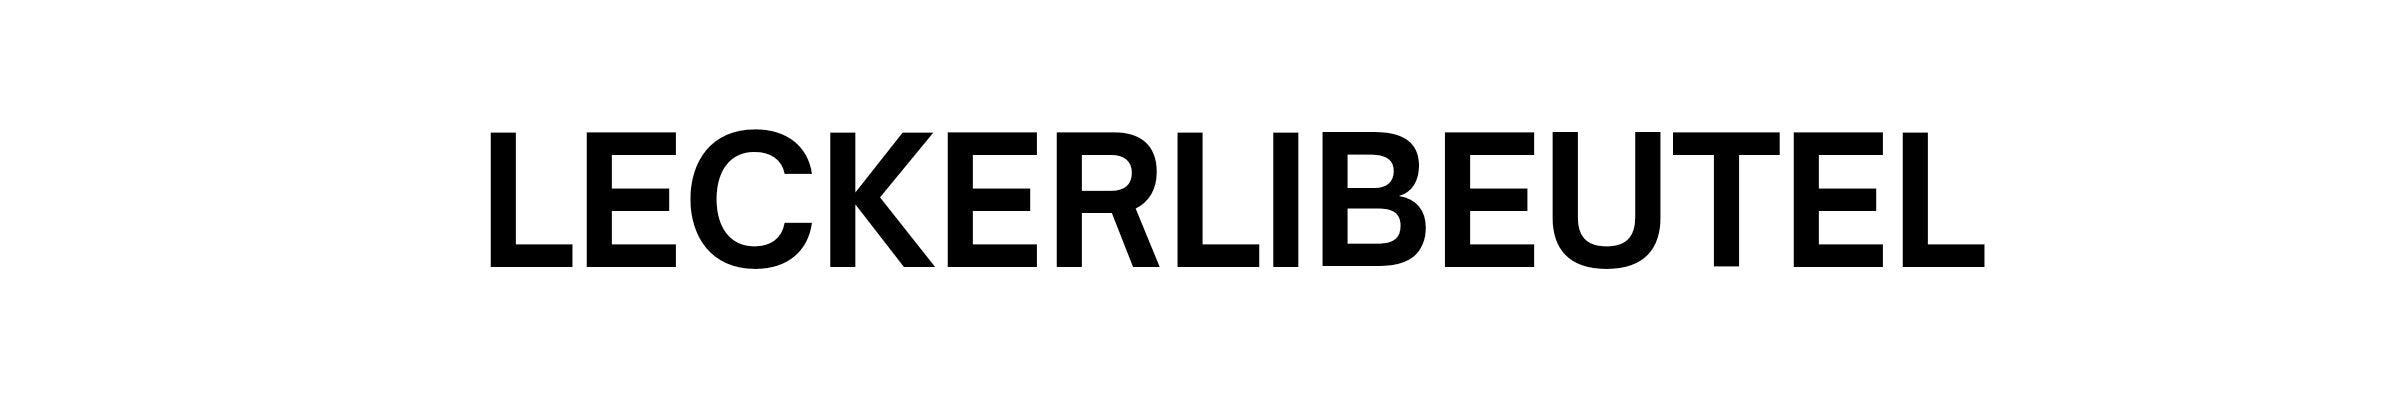 Leckerlibeutel & Co. - WOOFED.